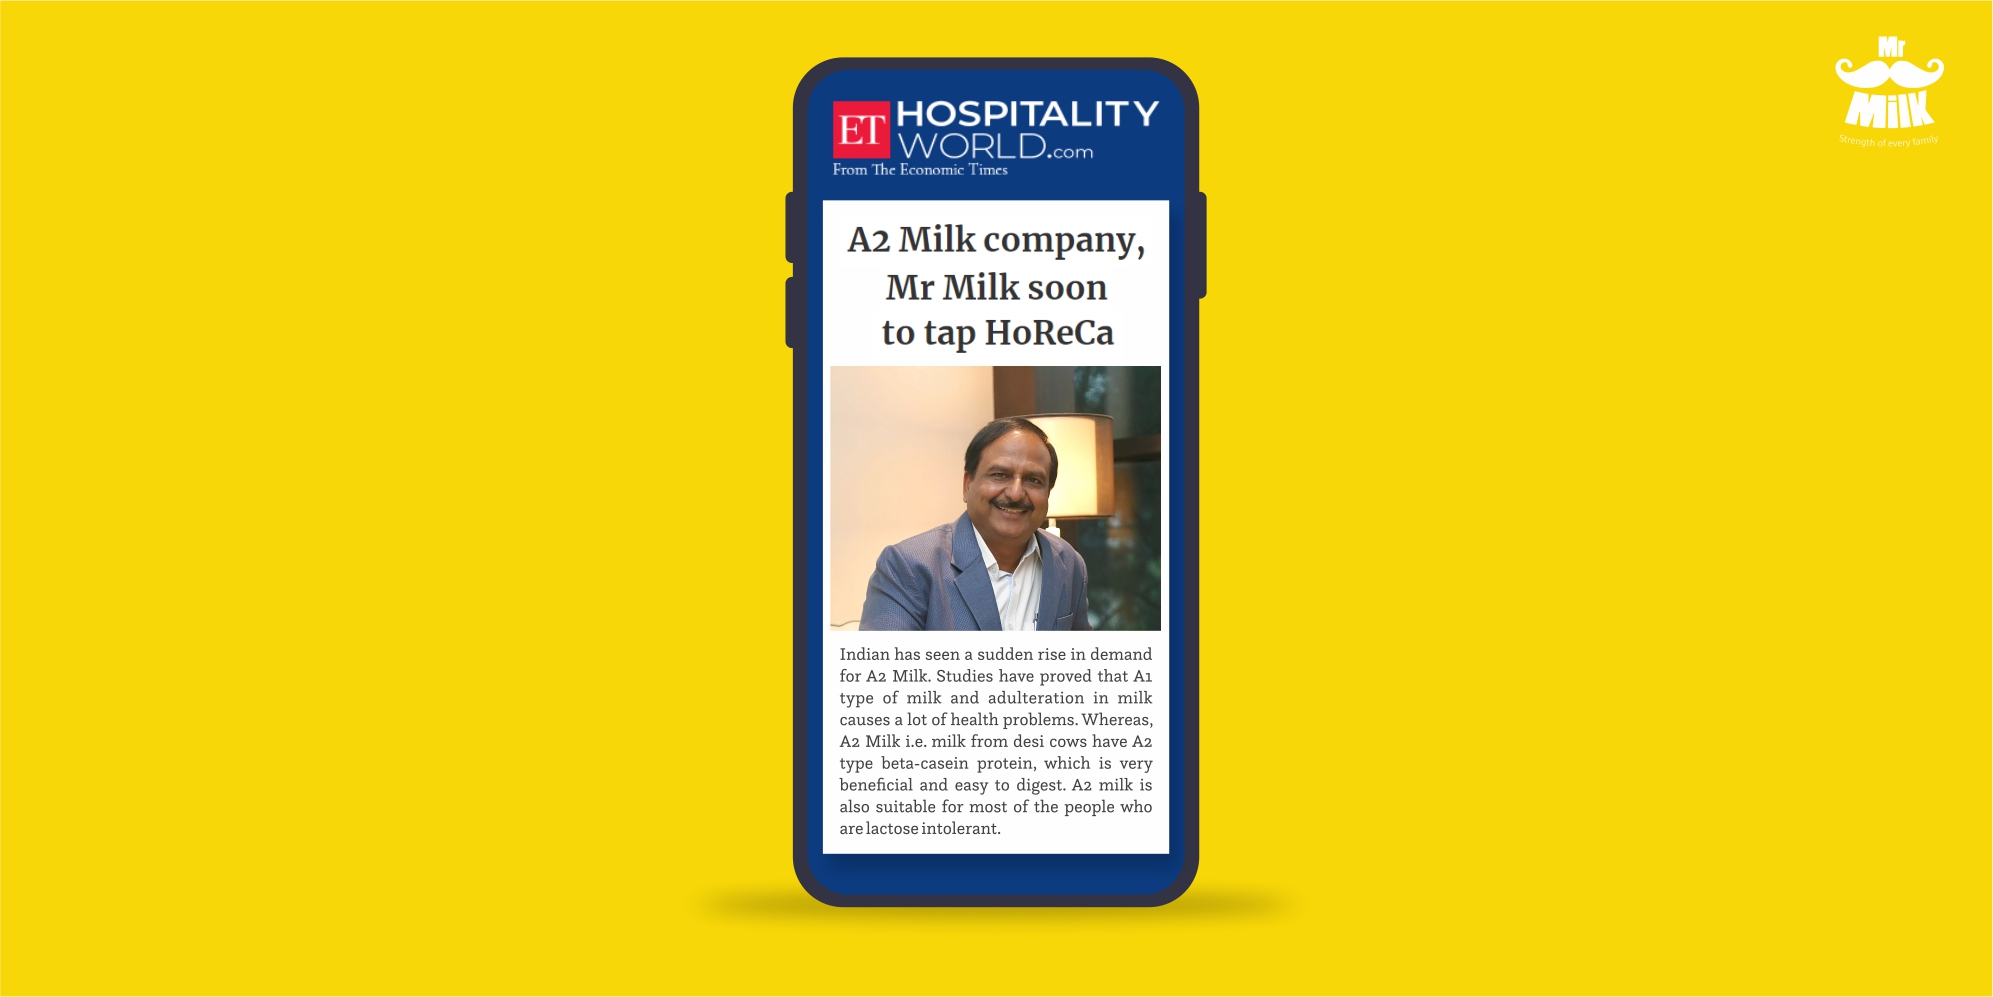 A2 Milk company, Mr Milk soon to tap HoReCa